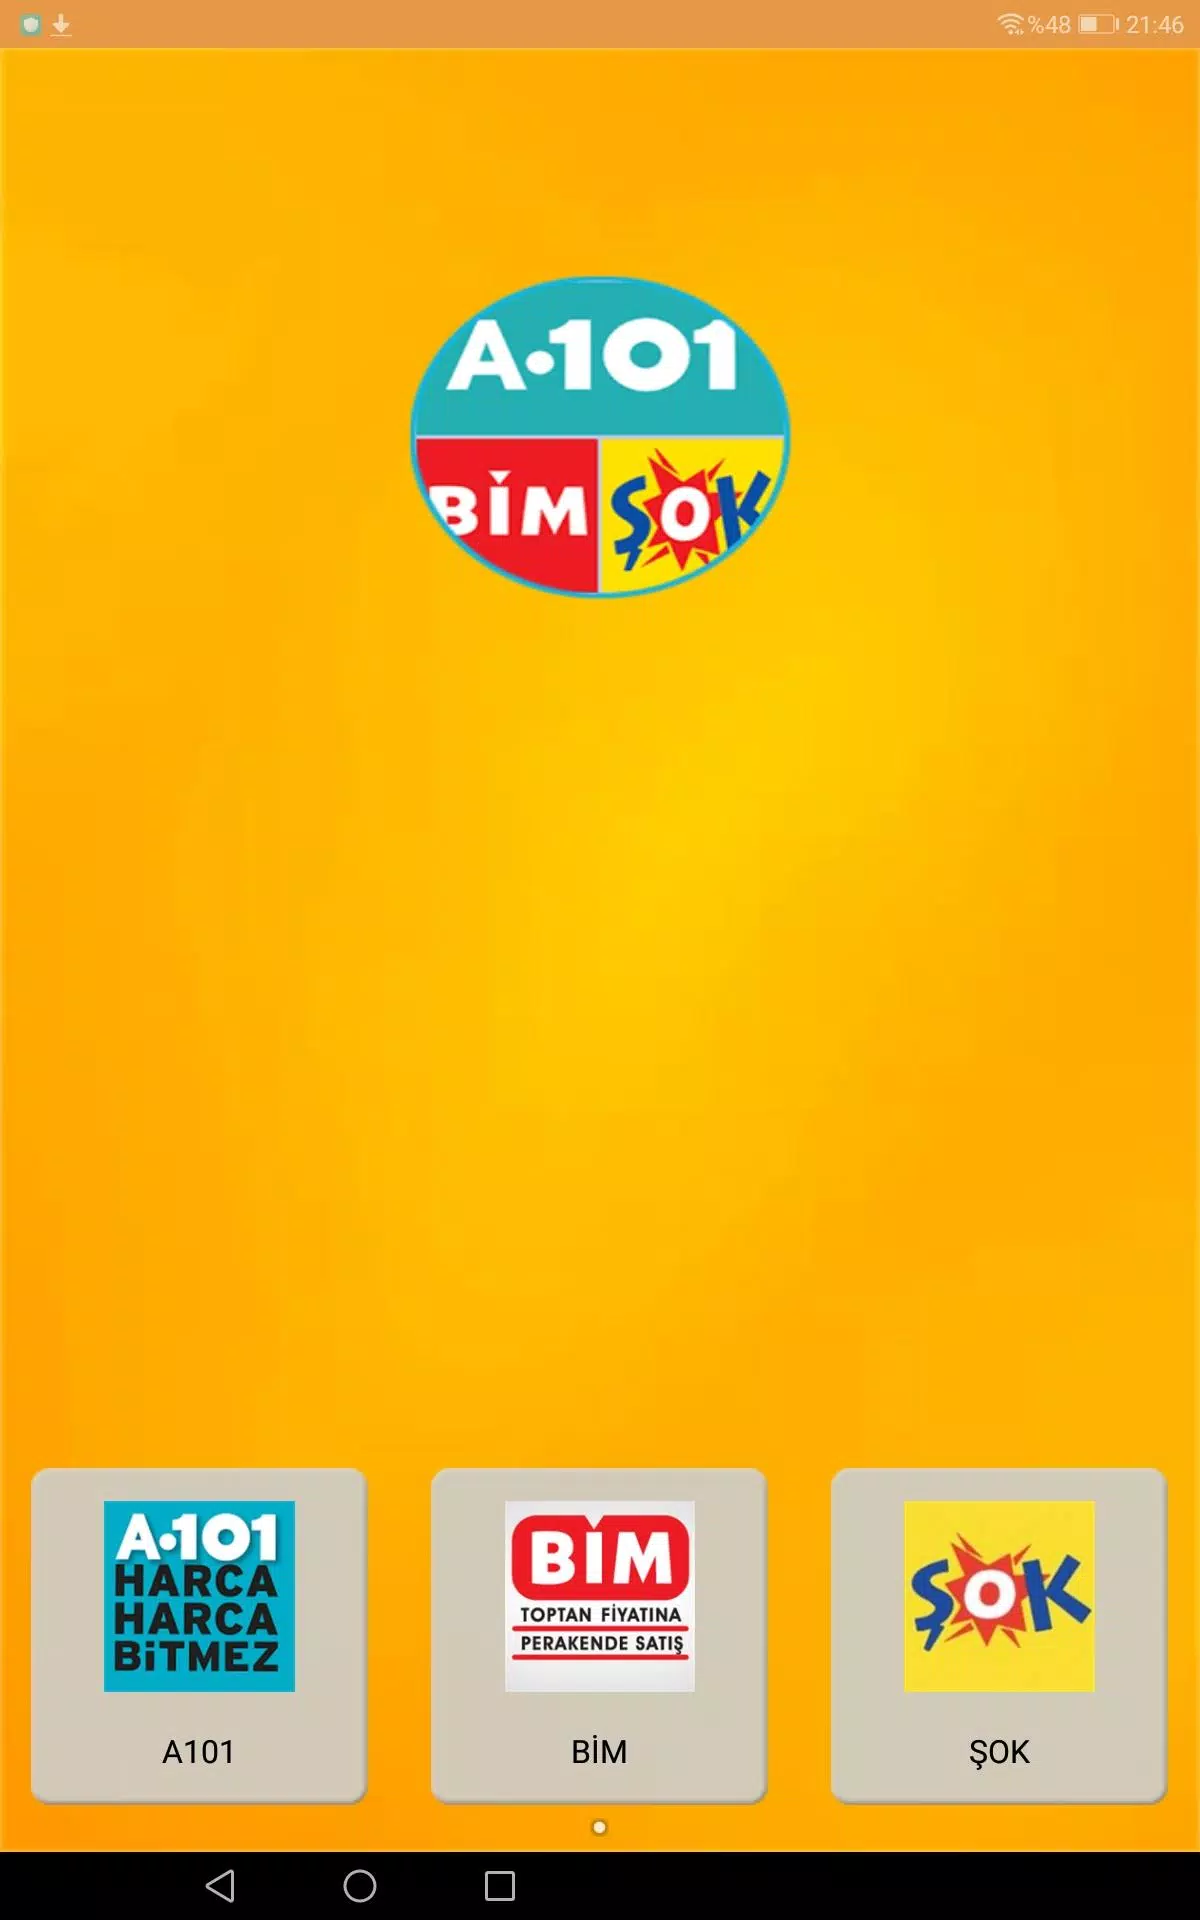 A101 Bim Şok Katalog APK for Android Download